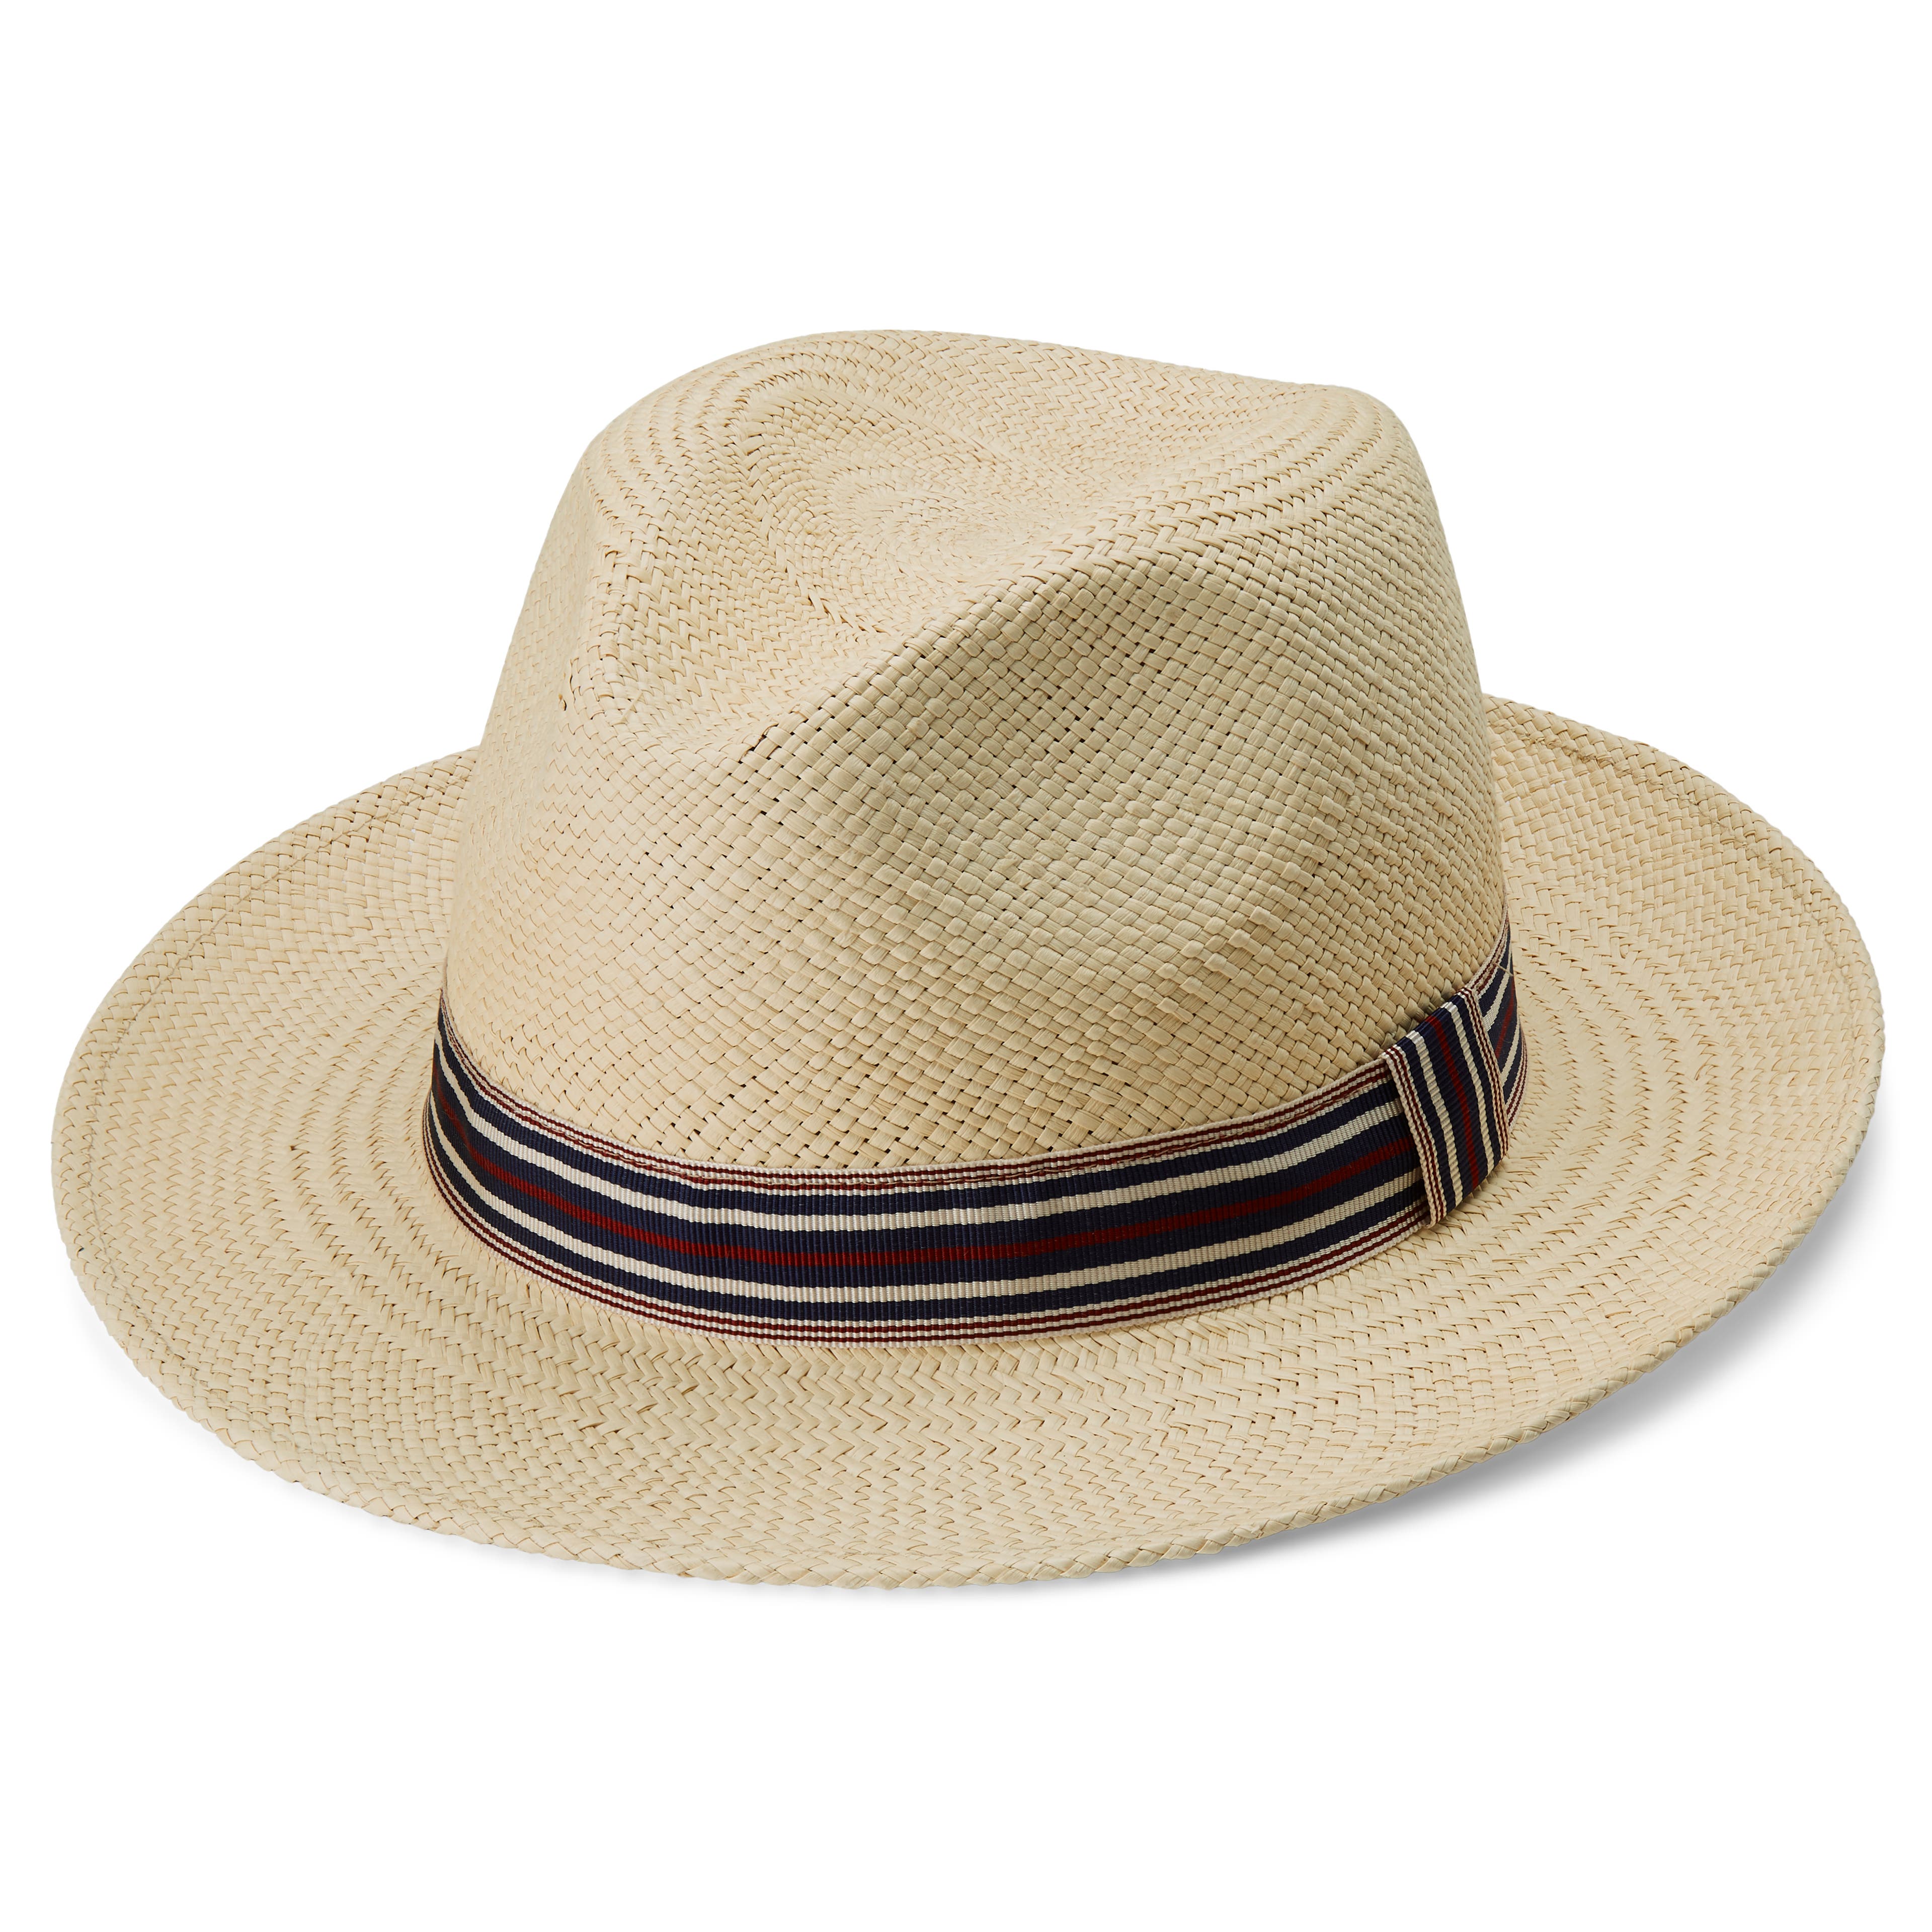 Piero klobúk Moda s pruhovaným popruhom v štýle Panama v prírodných farbách